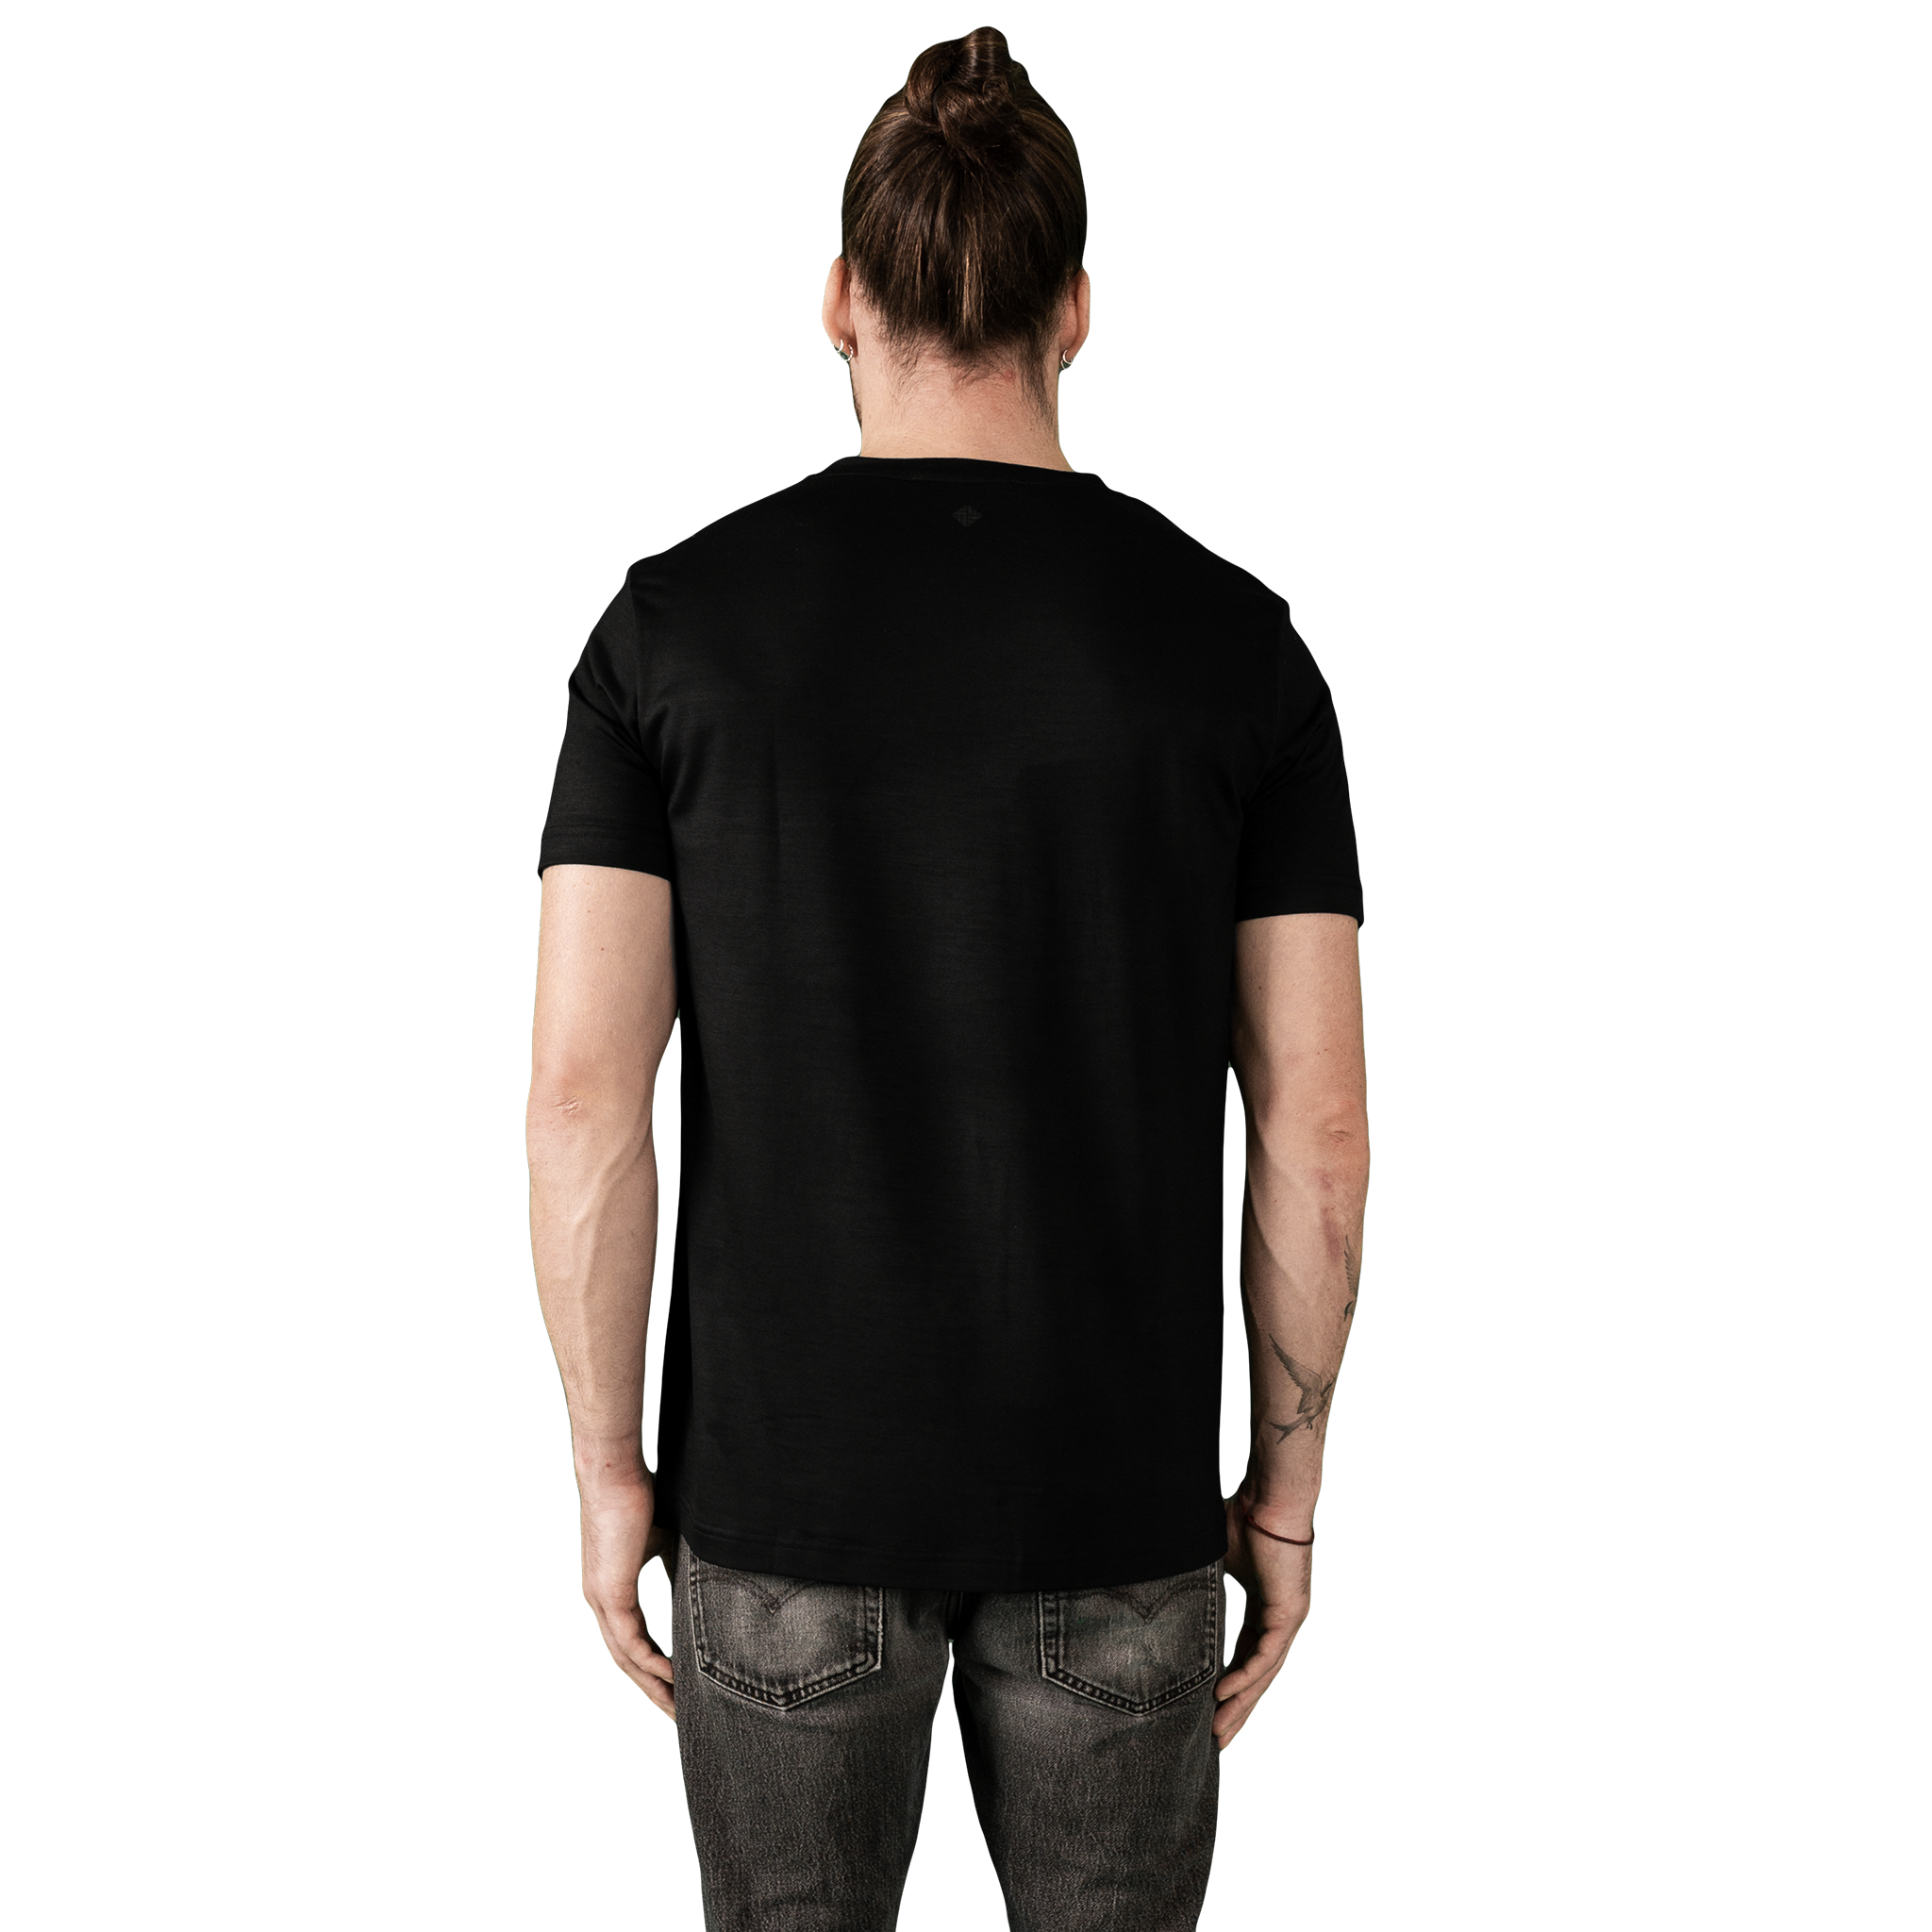 Heavyweight Ultrafine Merino T-Shirt | Black